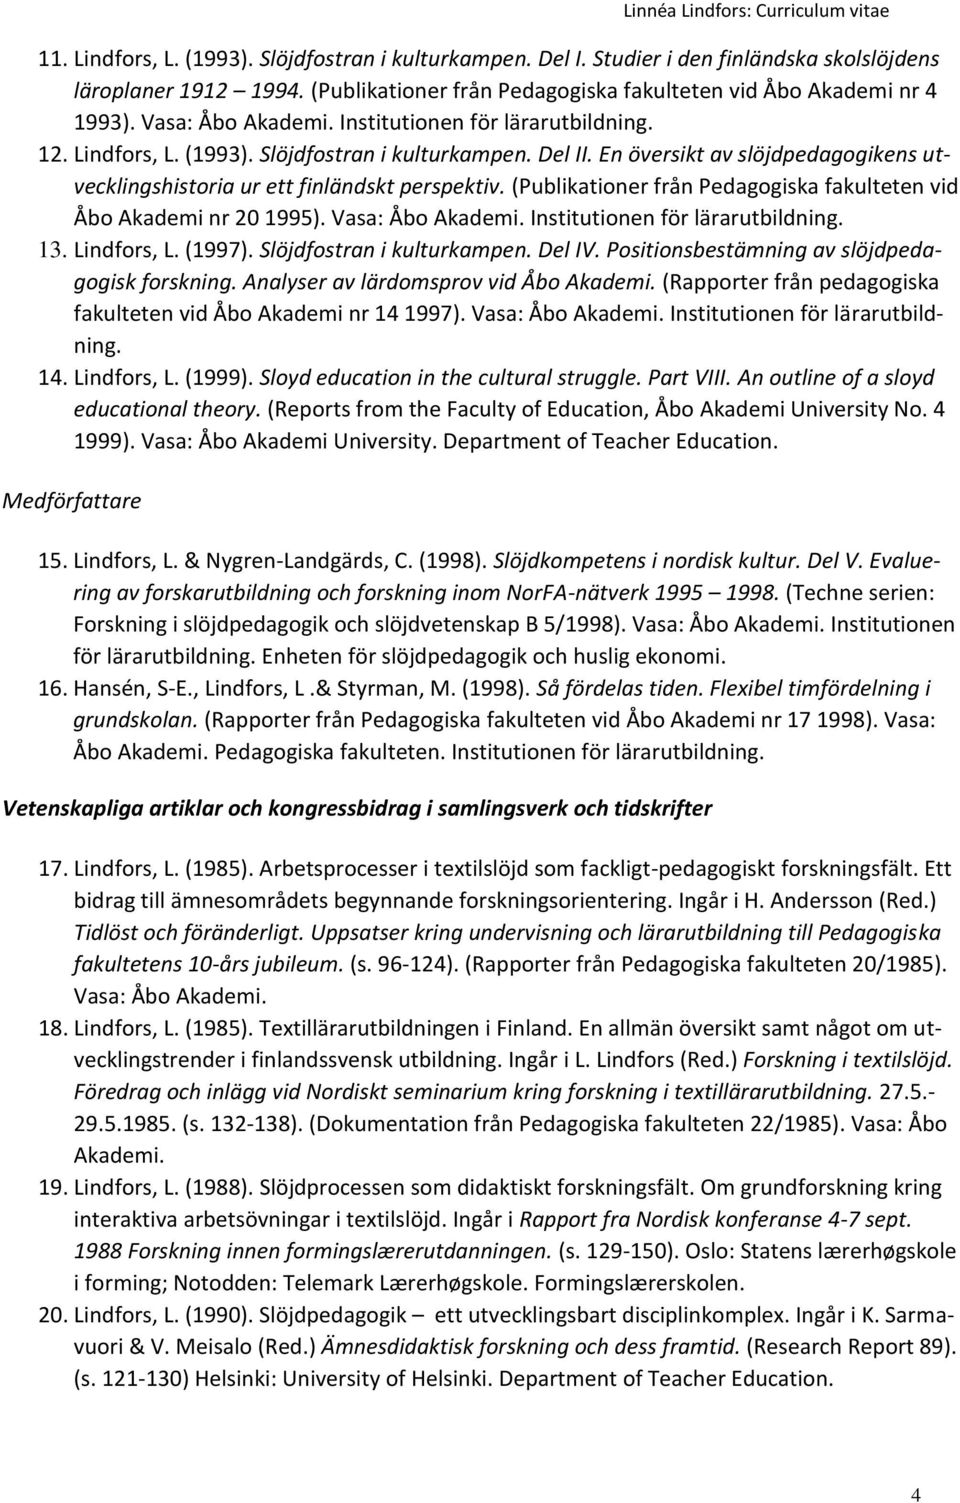 (Publikationer från Pedagogiska fakulteten vid Åbo Akademi nr 20 1995). Vasa: Åbo Akademi. Institutionen för lärarutbildning. 13. Lindfors, L. (1997). Slöjdfostran i kulturkampen. Del IV.